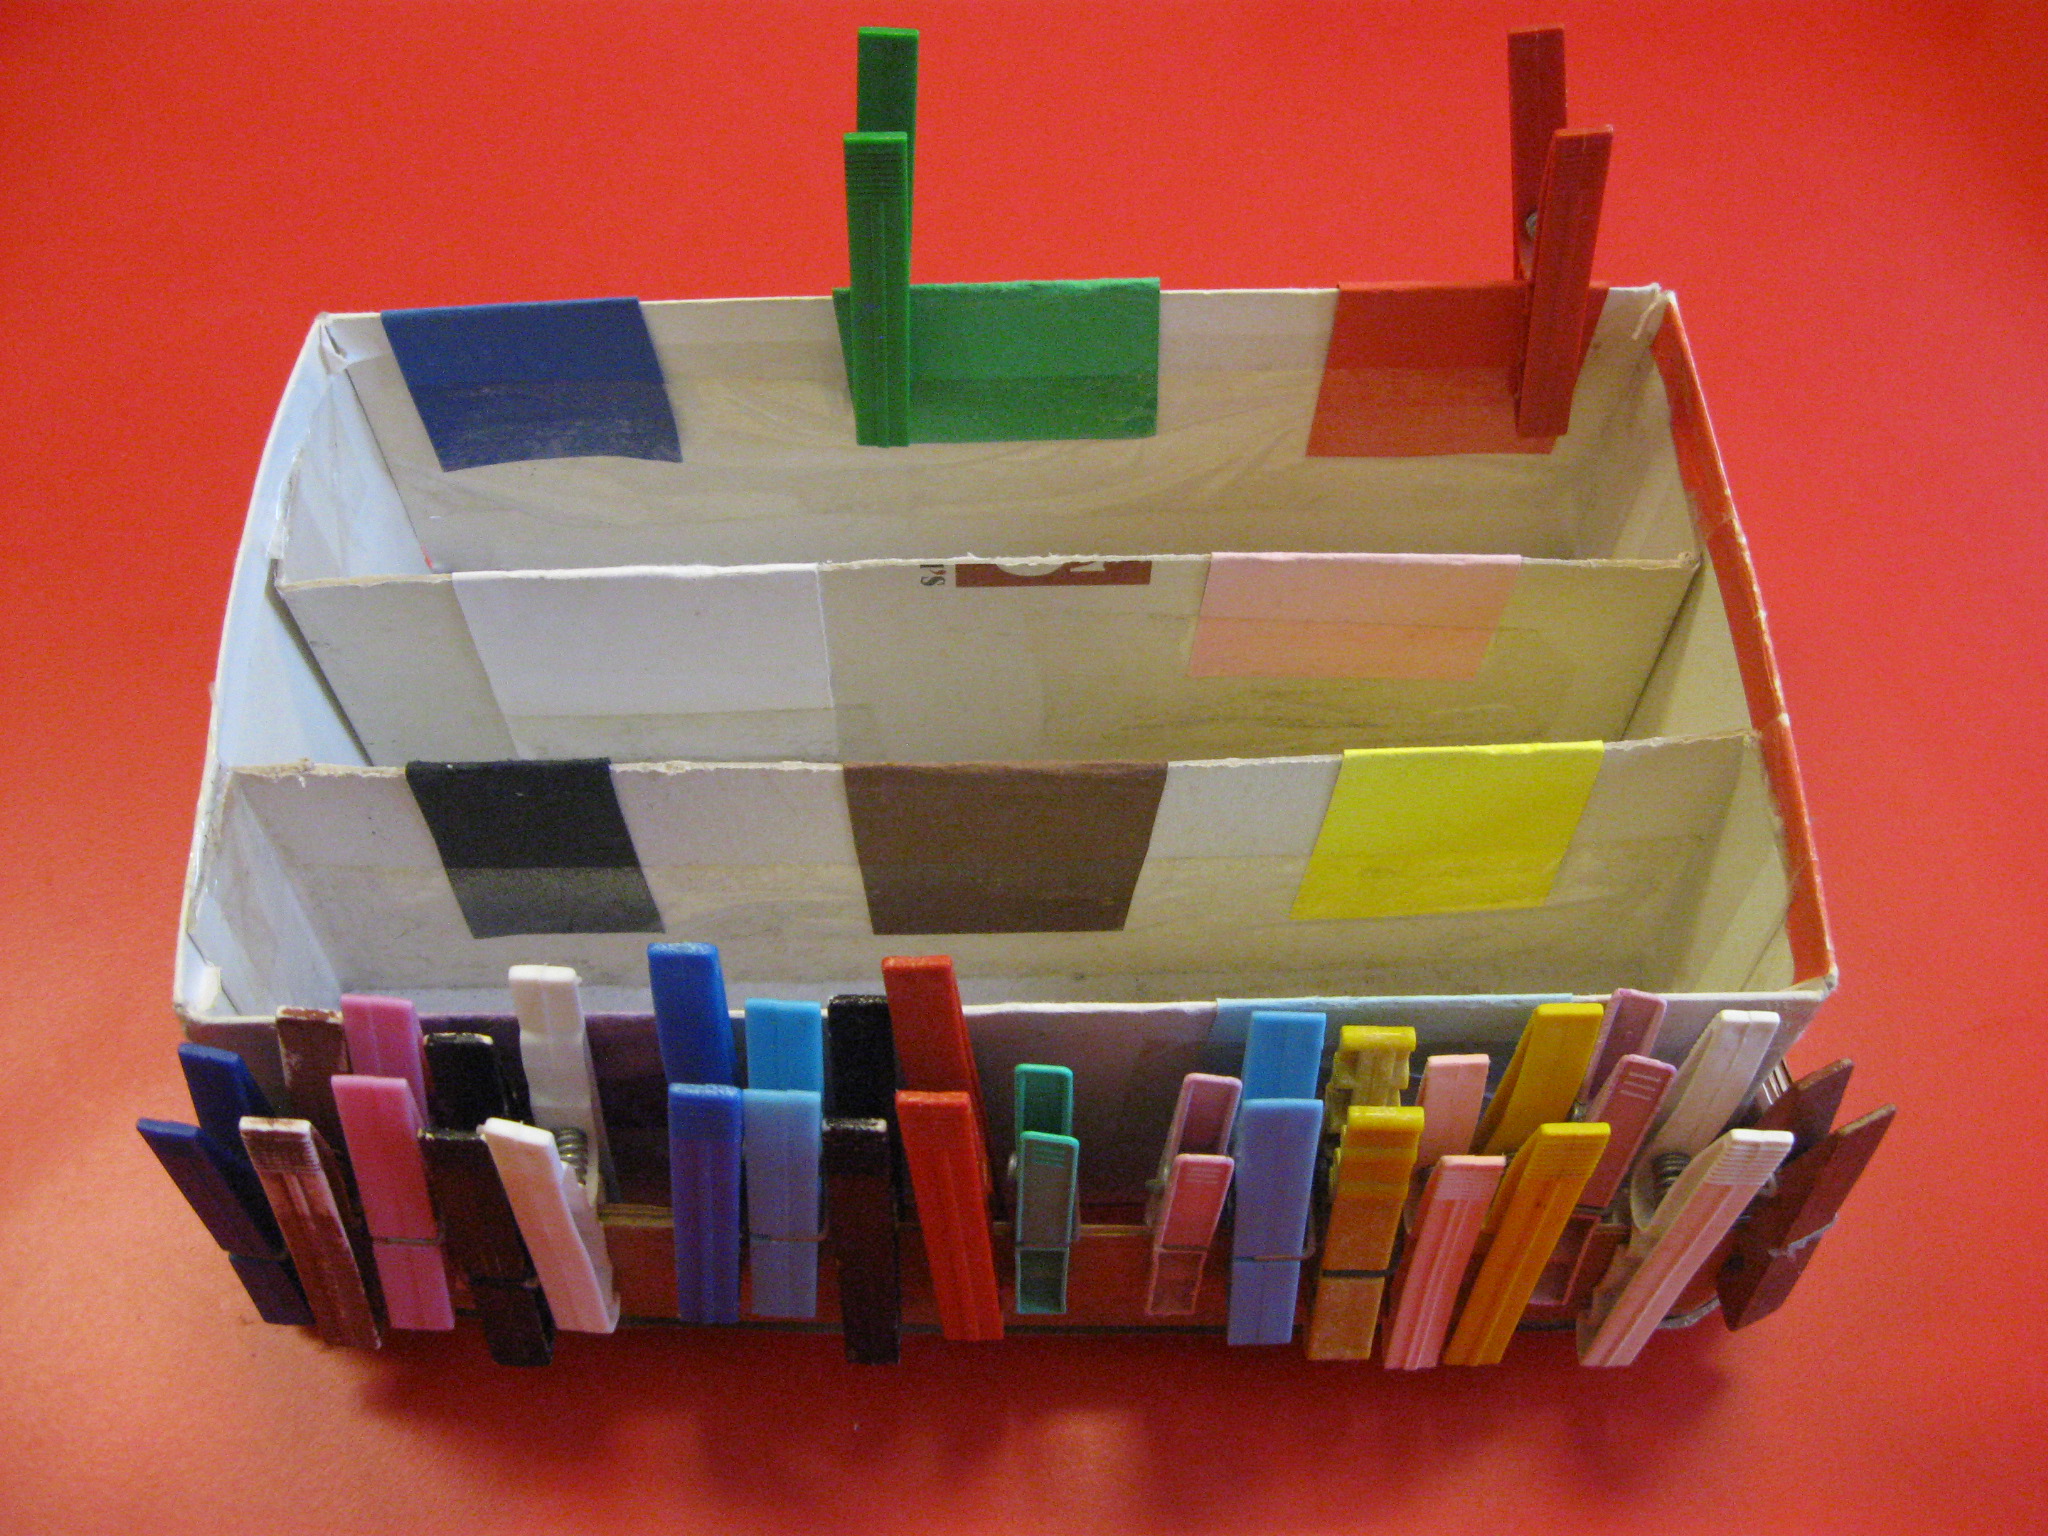 Una scatola rettangolare bianca con inserti colorati e, su un lato, mollette di diversi colori appese.